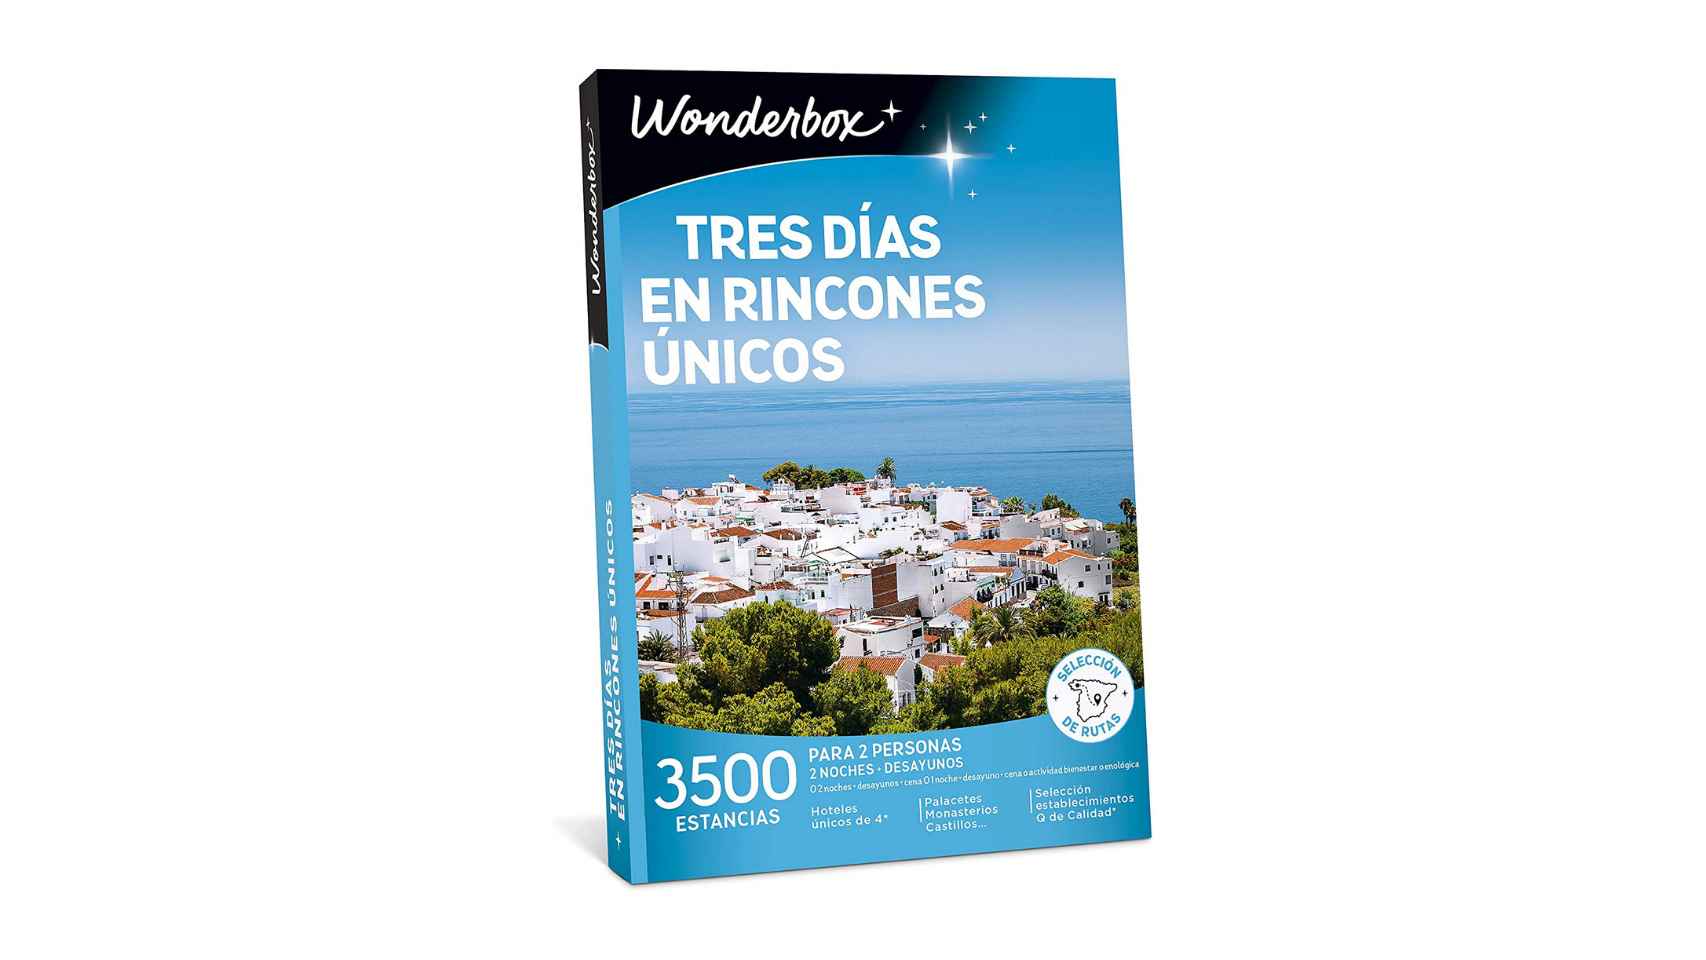 El cofre regalo Tratamientos - Wonderbox España